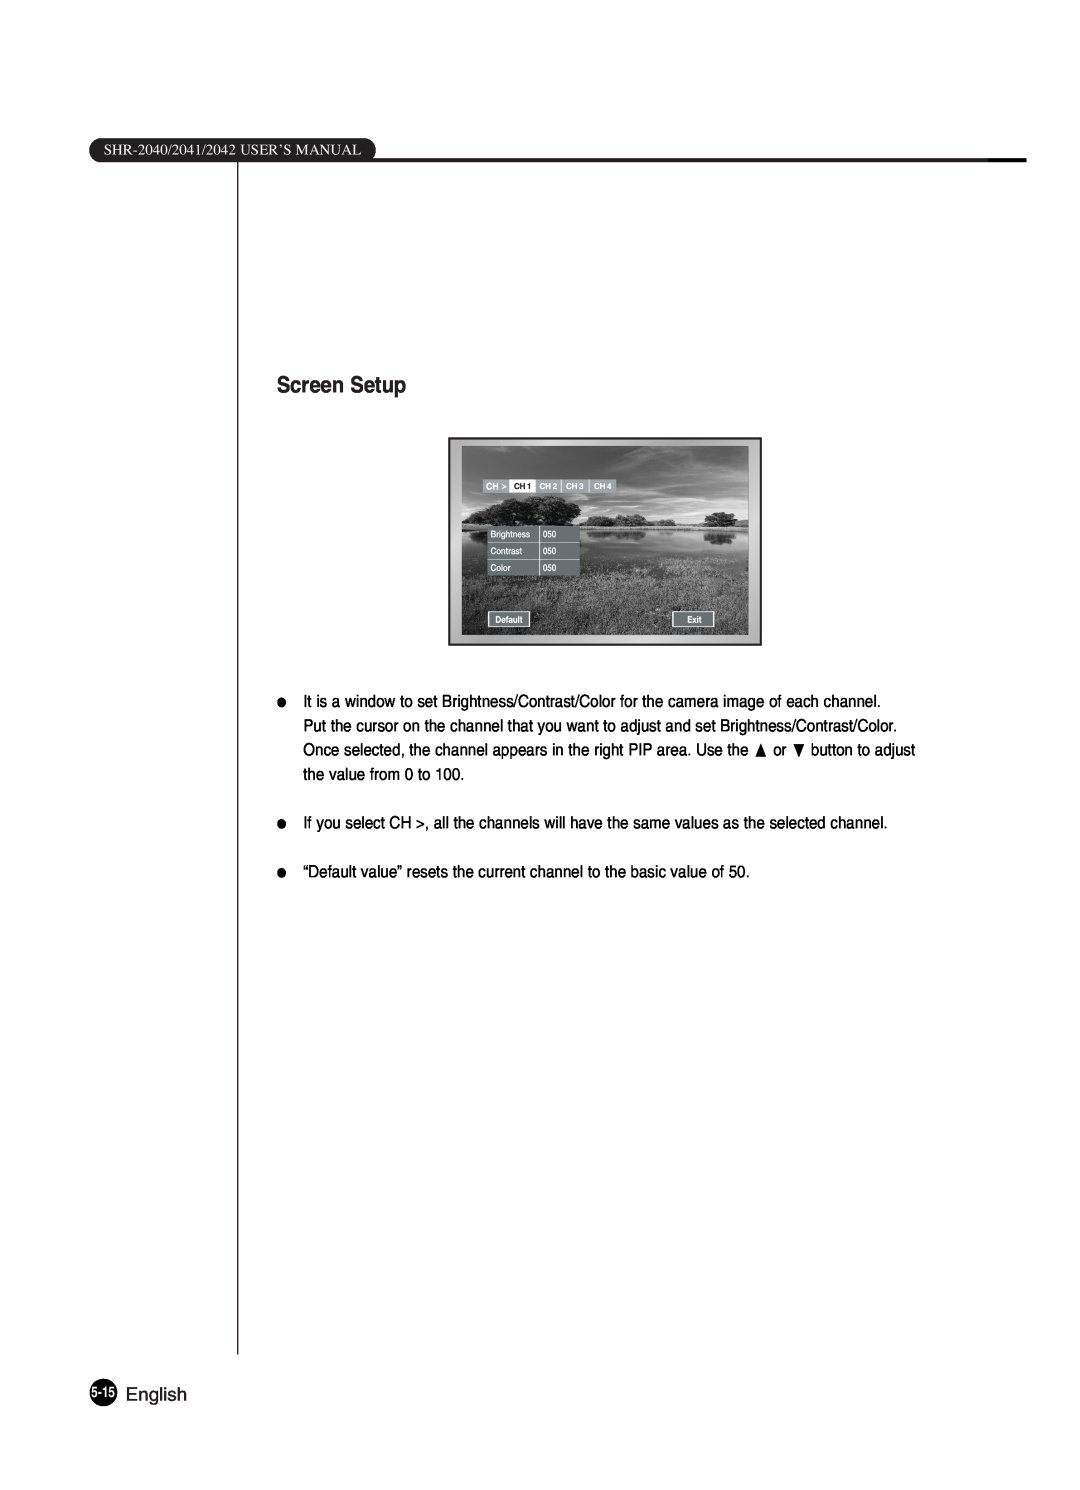 Samsung SHR-2042P250, SHR-2040P250 manual English, Screen Setup 